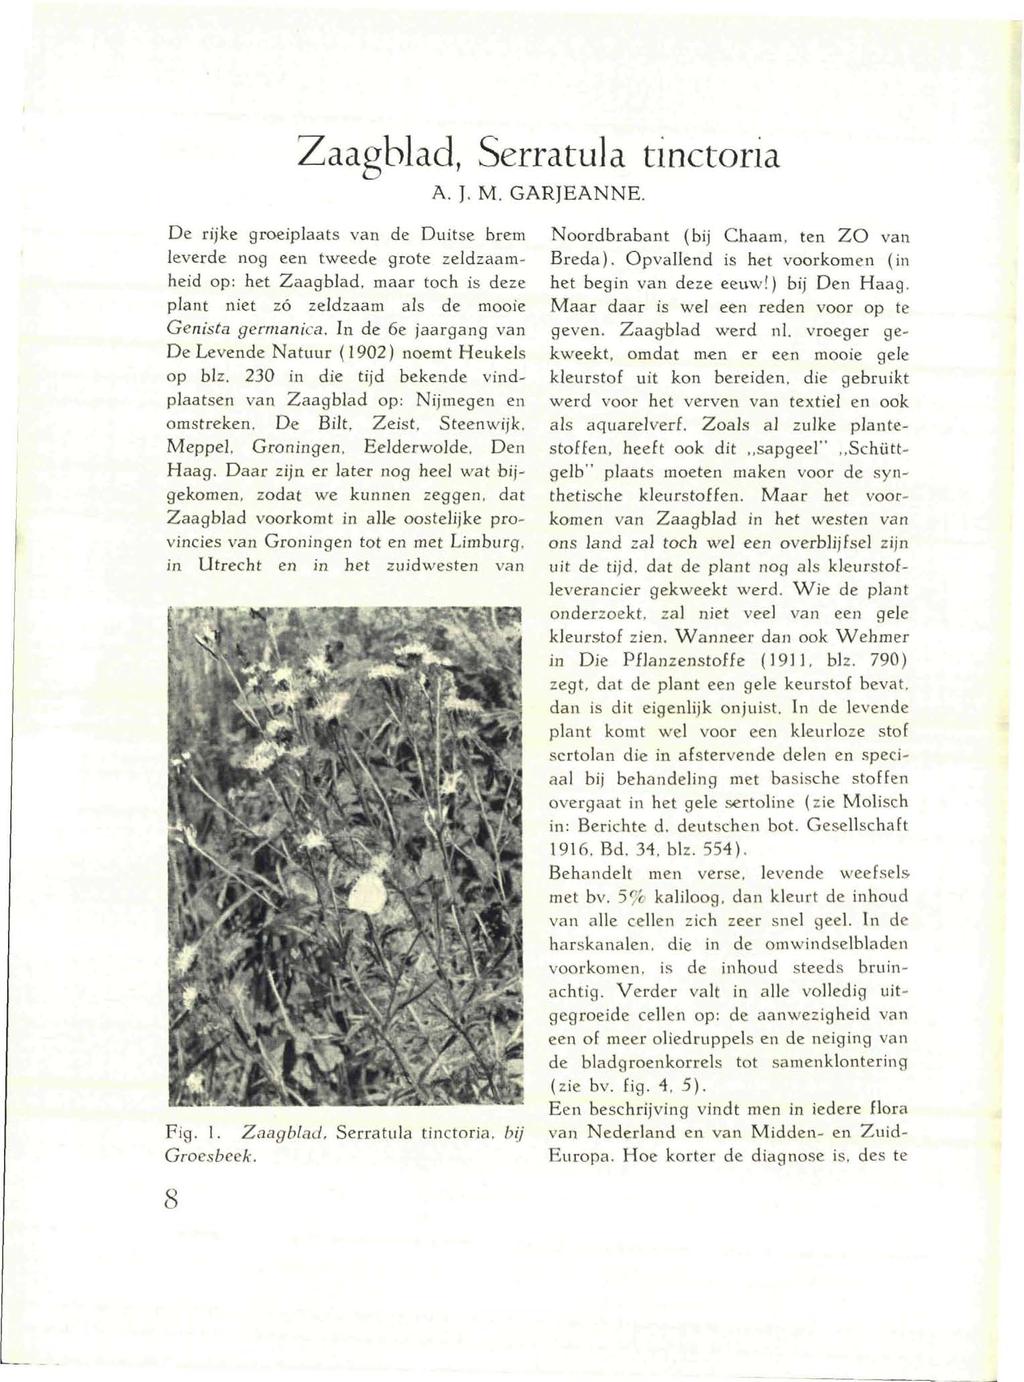 Zaagblad, Serratula tinctona A. J. M. GARJEANNE. De rijke groeiplaats van de Duitse brem leverde nog een tweede grote zeldzaamheid op: het Zaagblad.